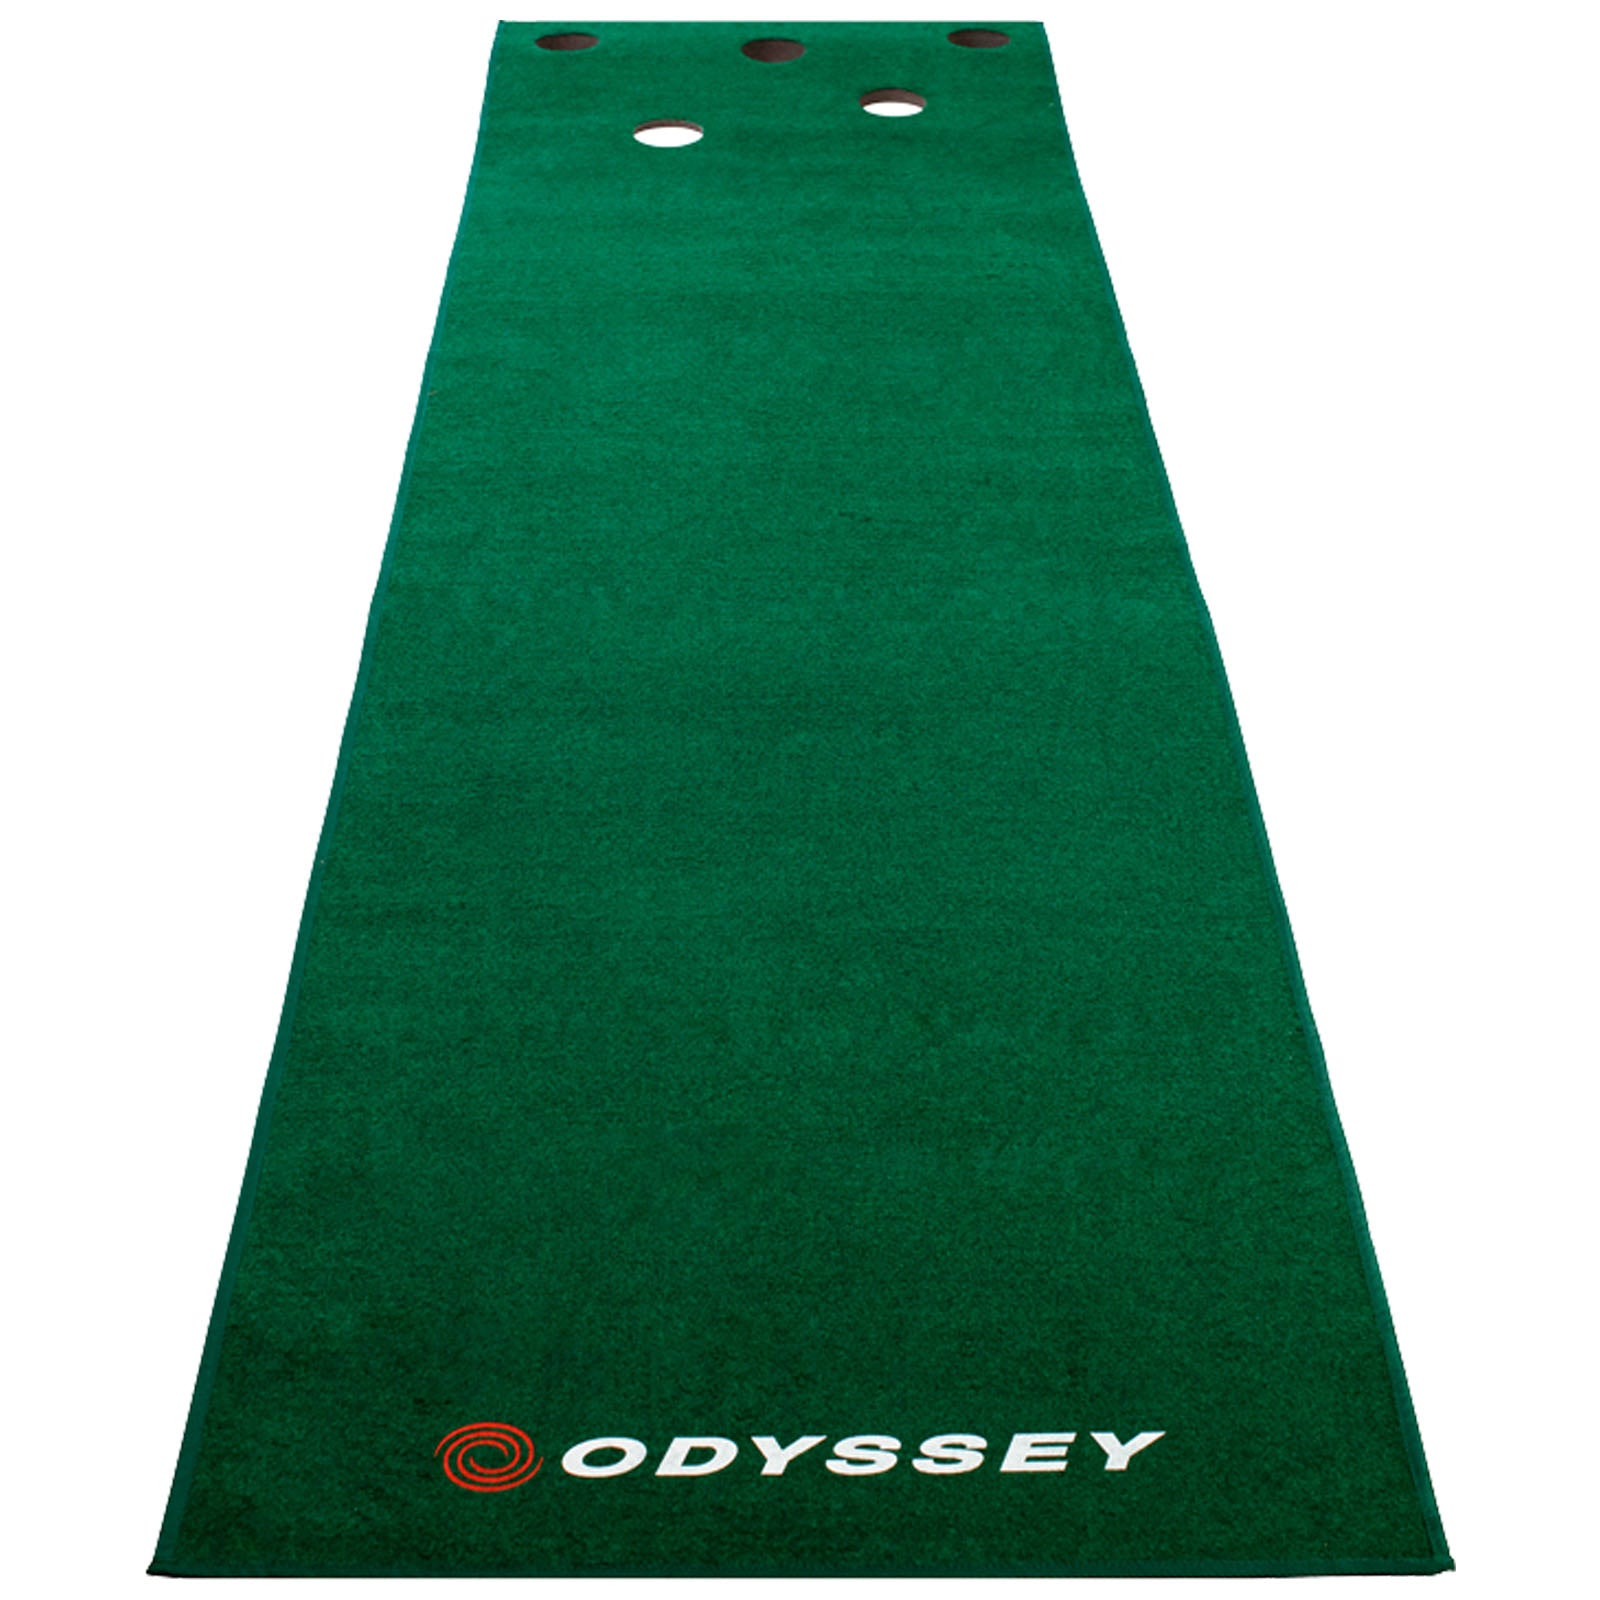 Odyssey Golf Putting Mats